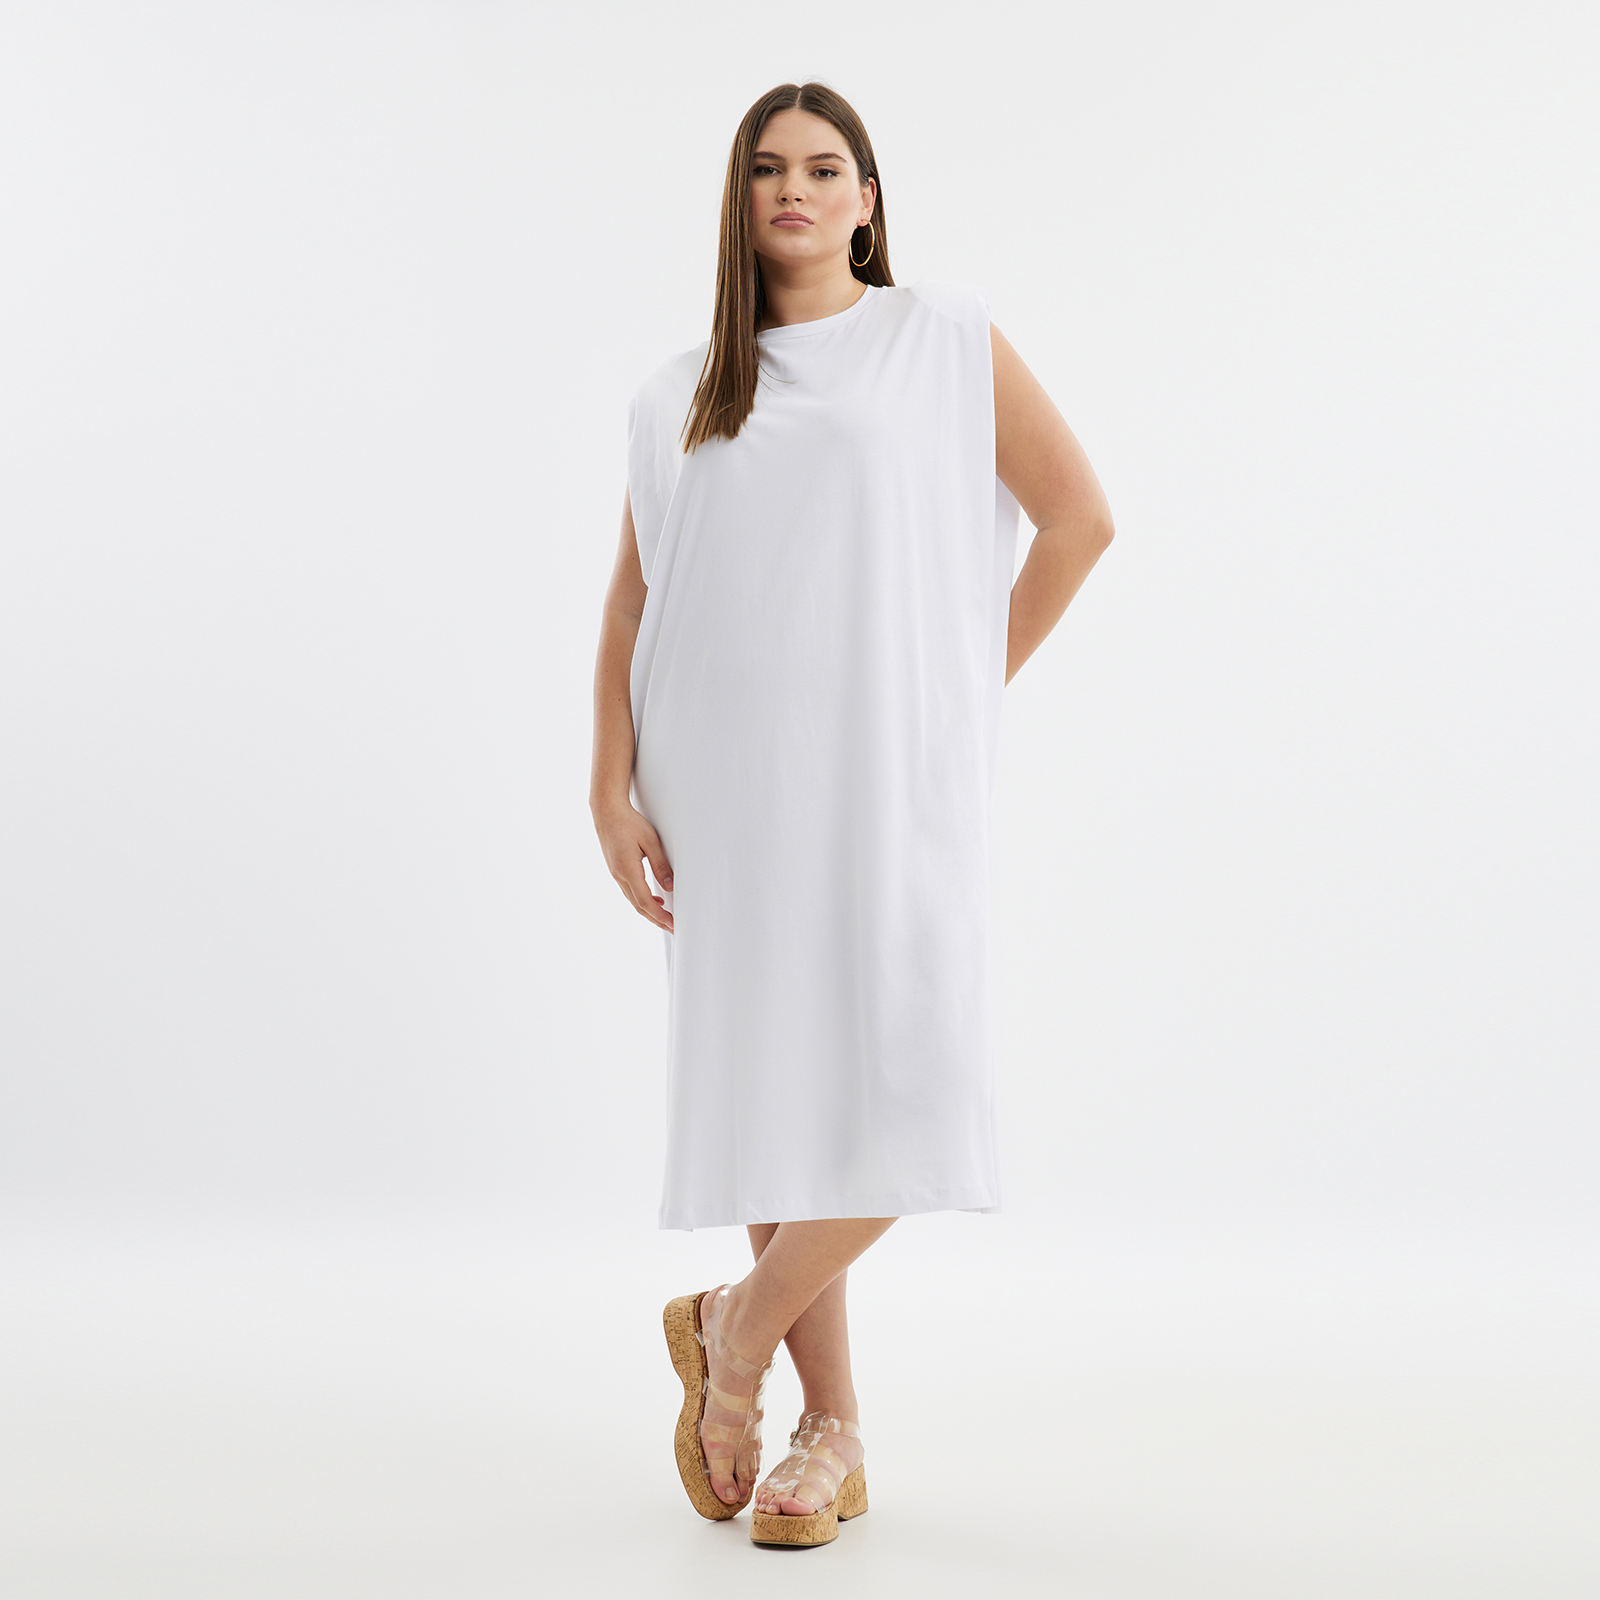 Φόρεμα βαμβακερό με βάτες 8101.7204-white